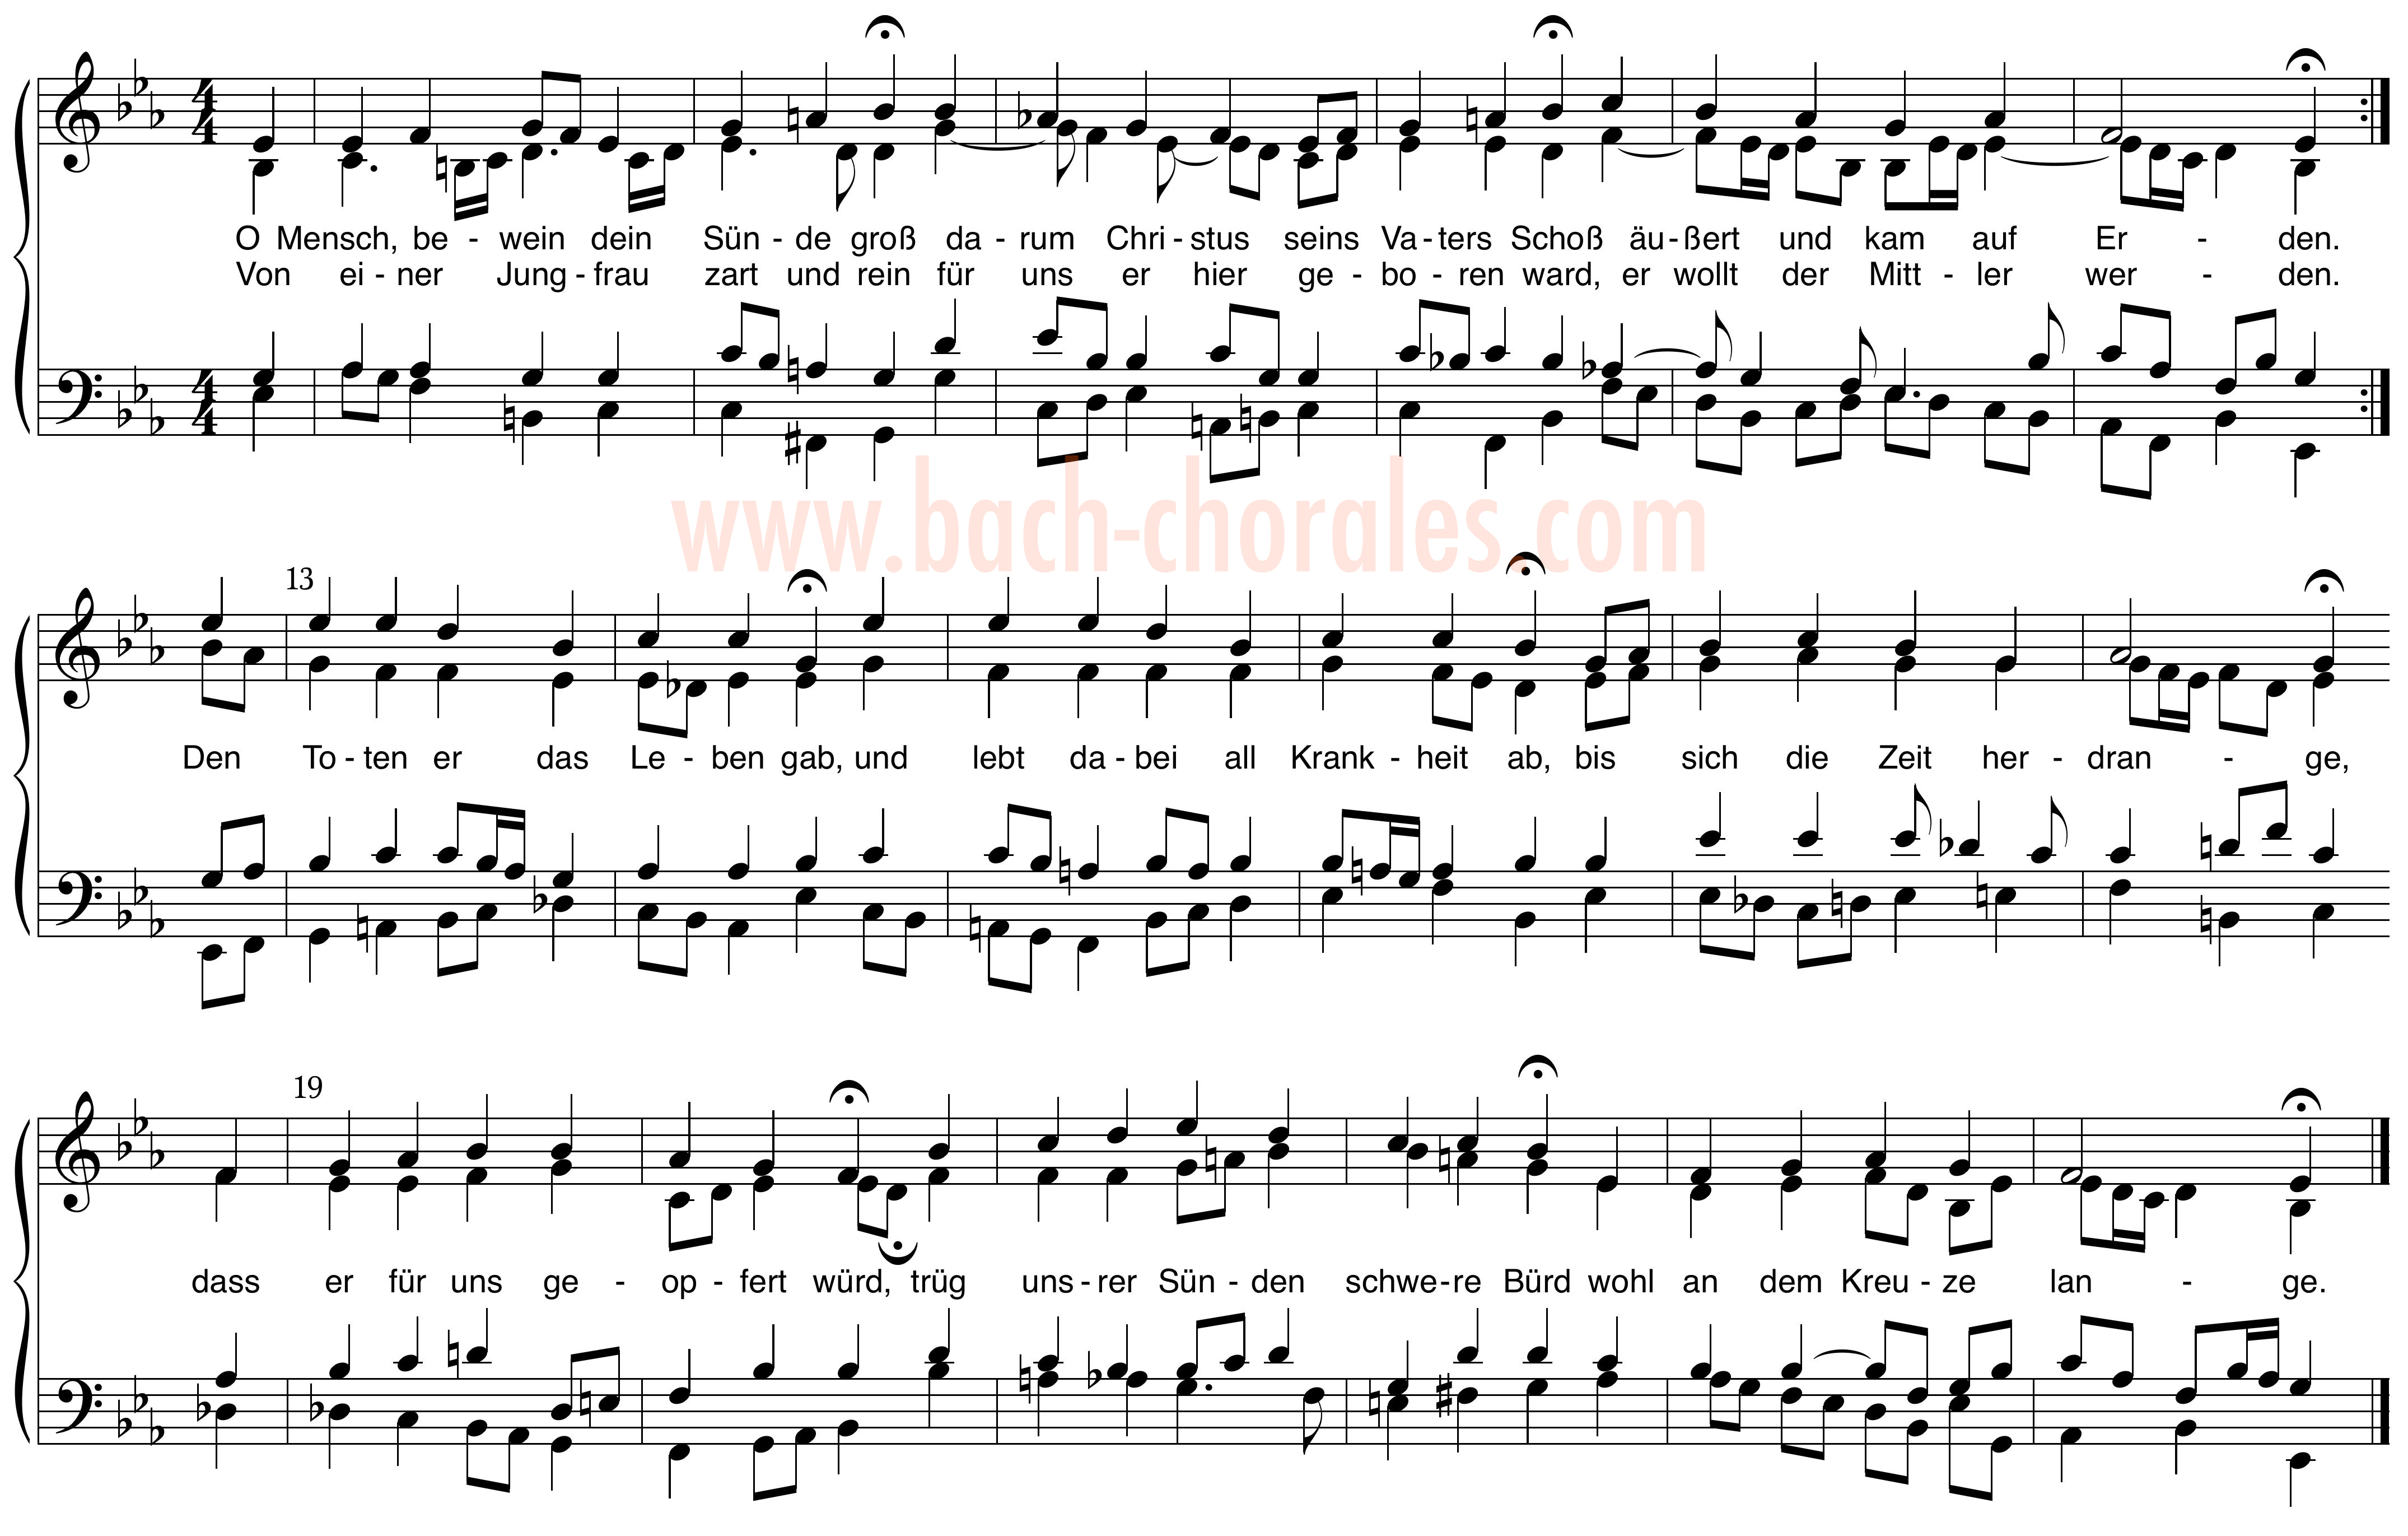 notenbeeld BWV 402 op https://www.bach-chorales.com/